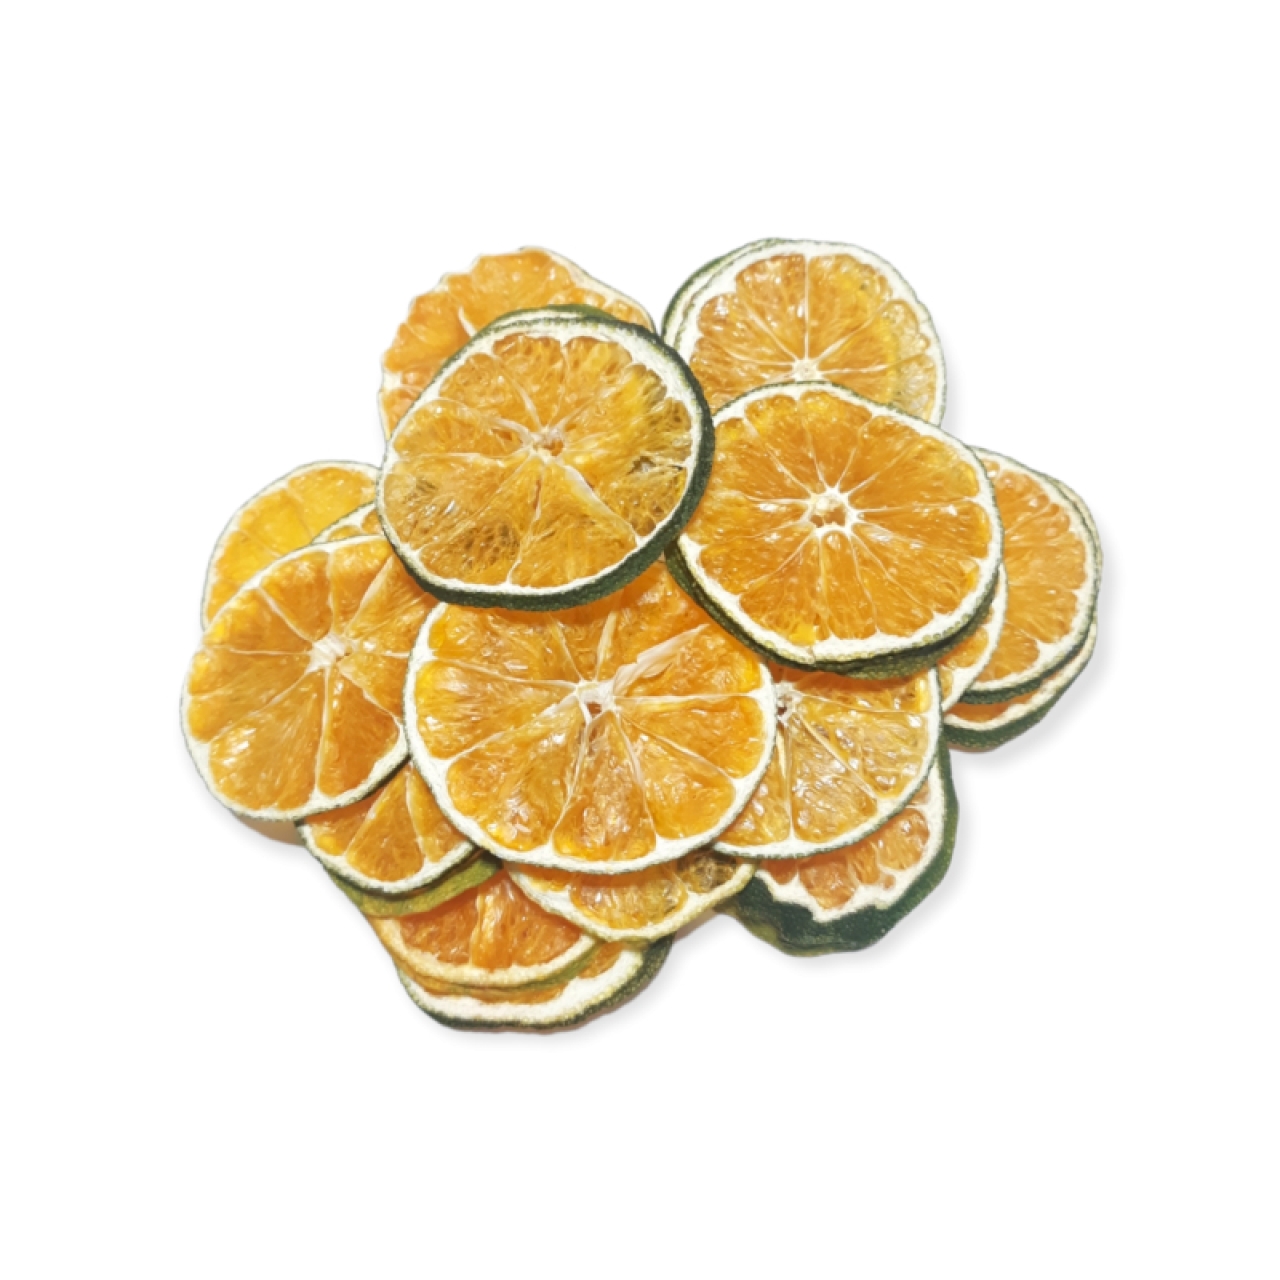 میوه خشک نارنگی اسلایس 1 کیلوگرم وجیسنک